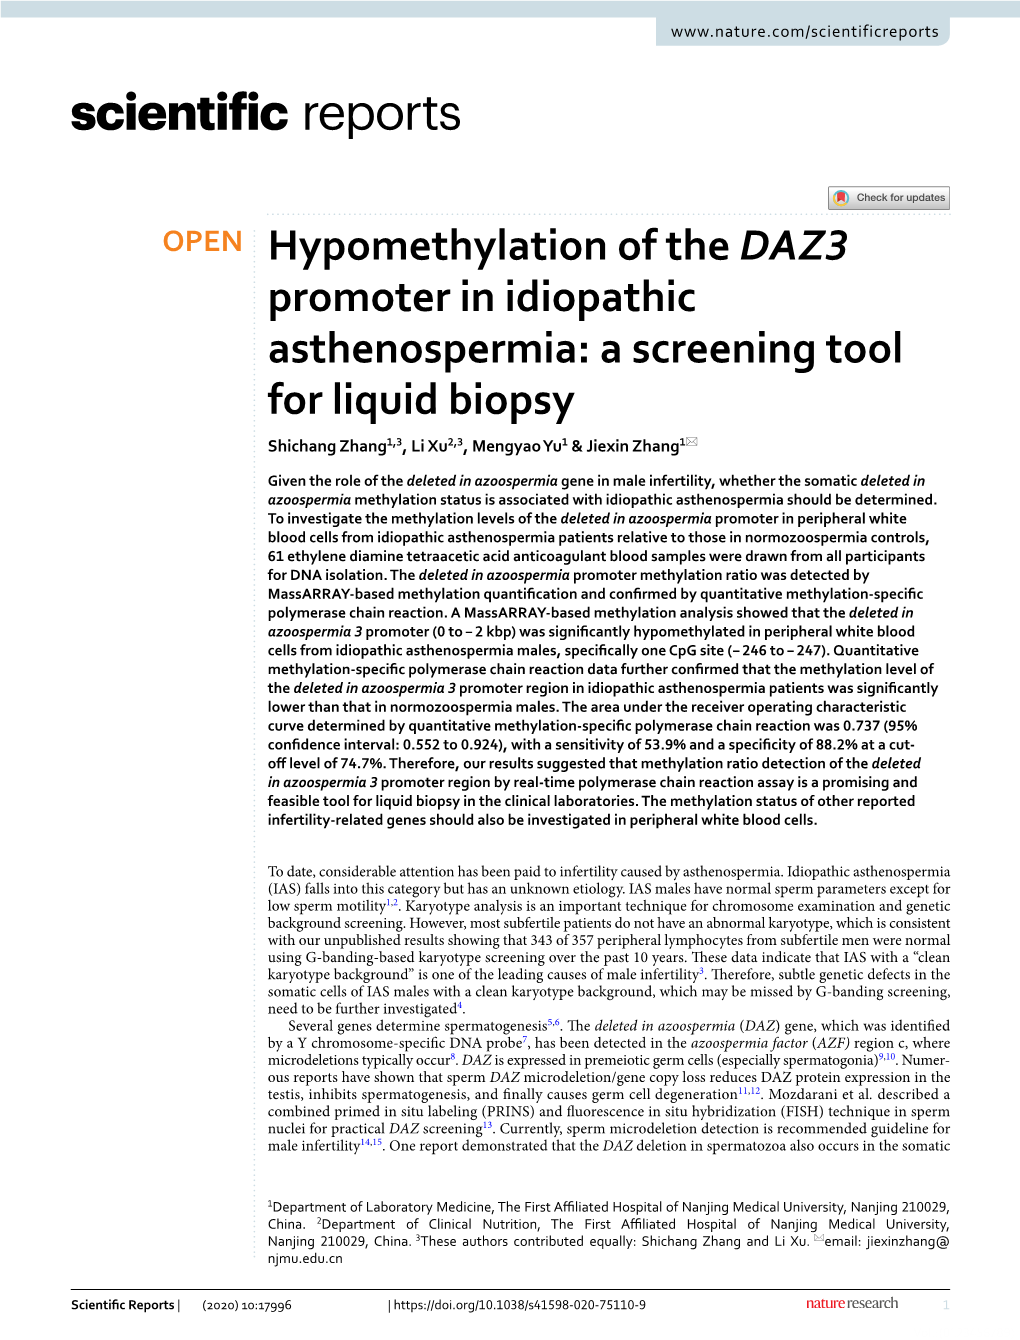 Hypomethylation of the DAZ3 Promoter in Idiopathic Asthenospermia: a Screening Tool for Liquid Biopsy Shichang Zhang1,3, Li Xu2,3, Mengyao Yu1 & Jiexin Zhang1*